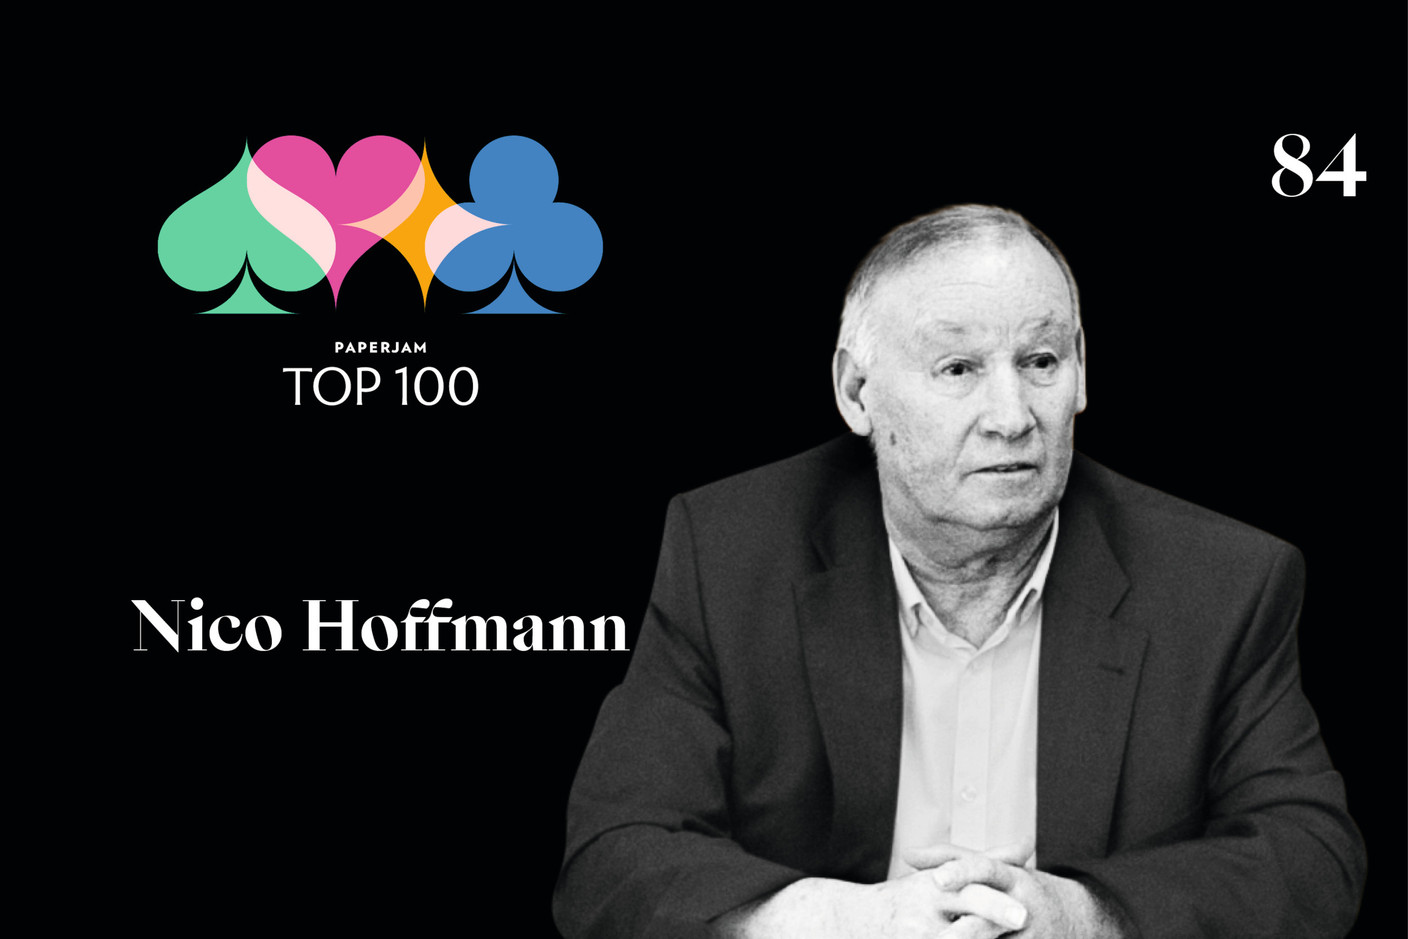 Nico Hoffmann, n°84 du Paperjam Top 100 2020. (Illustration: Maison Moderne)